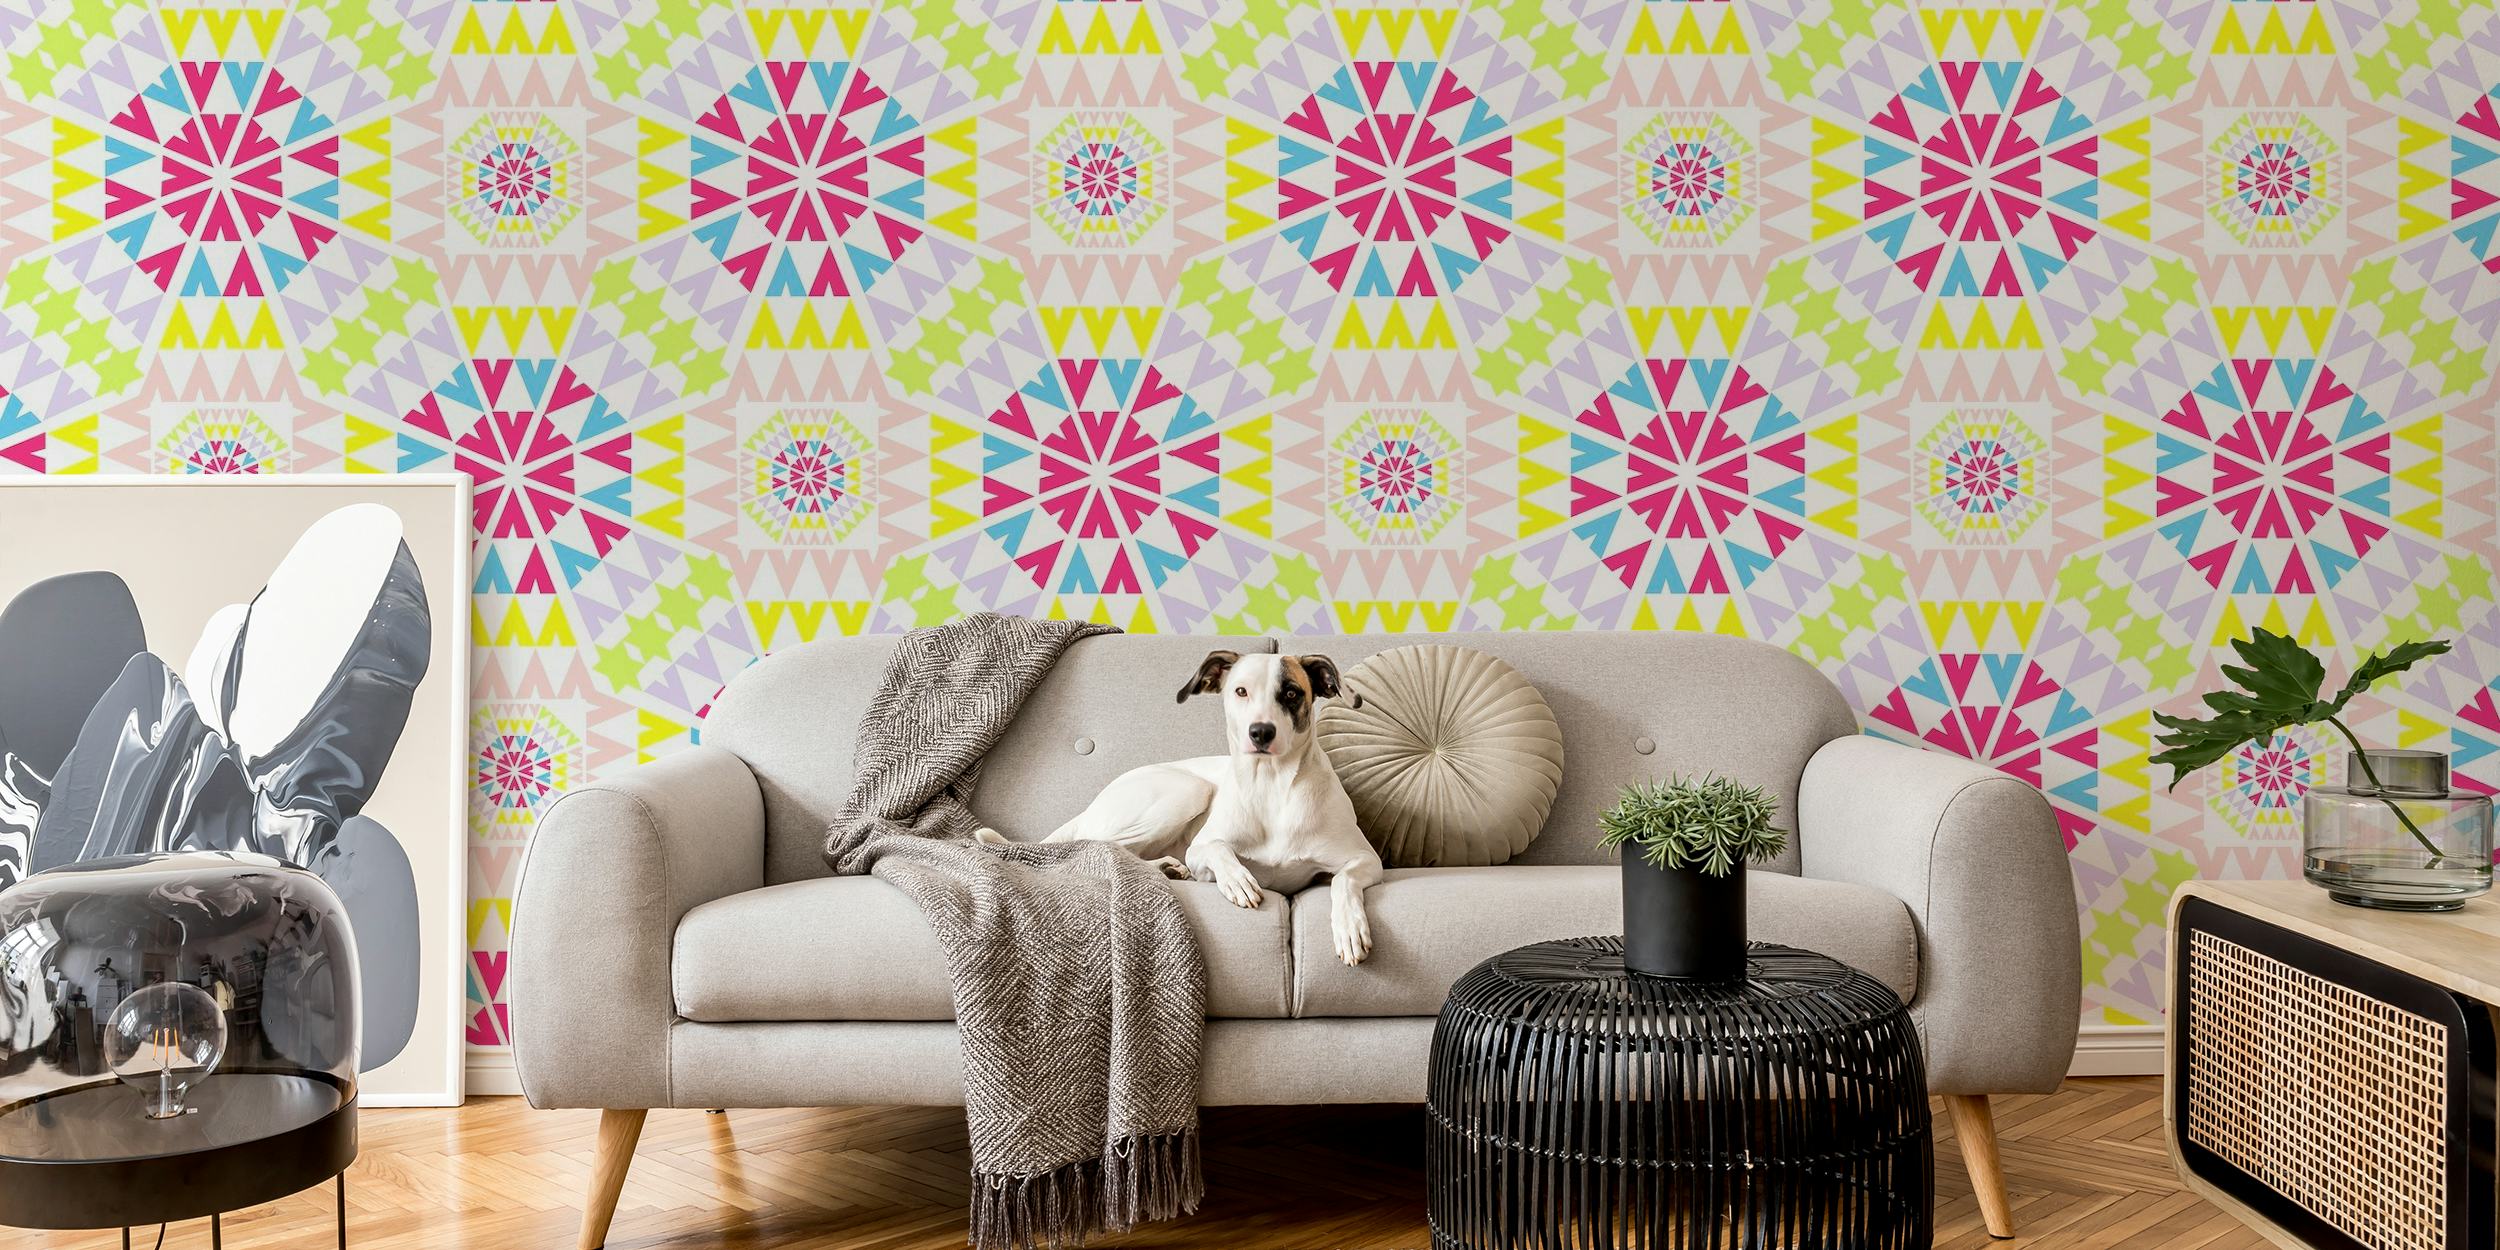 Kolorowy mozaikowy wzór fototapety „Litera V” firmy Happywall z motywami w kolorze różowym, niebieskim i żółtym na kremowym tle